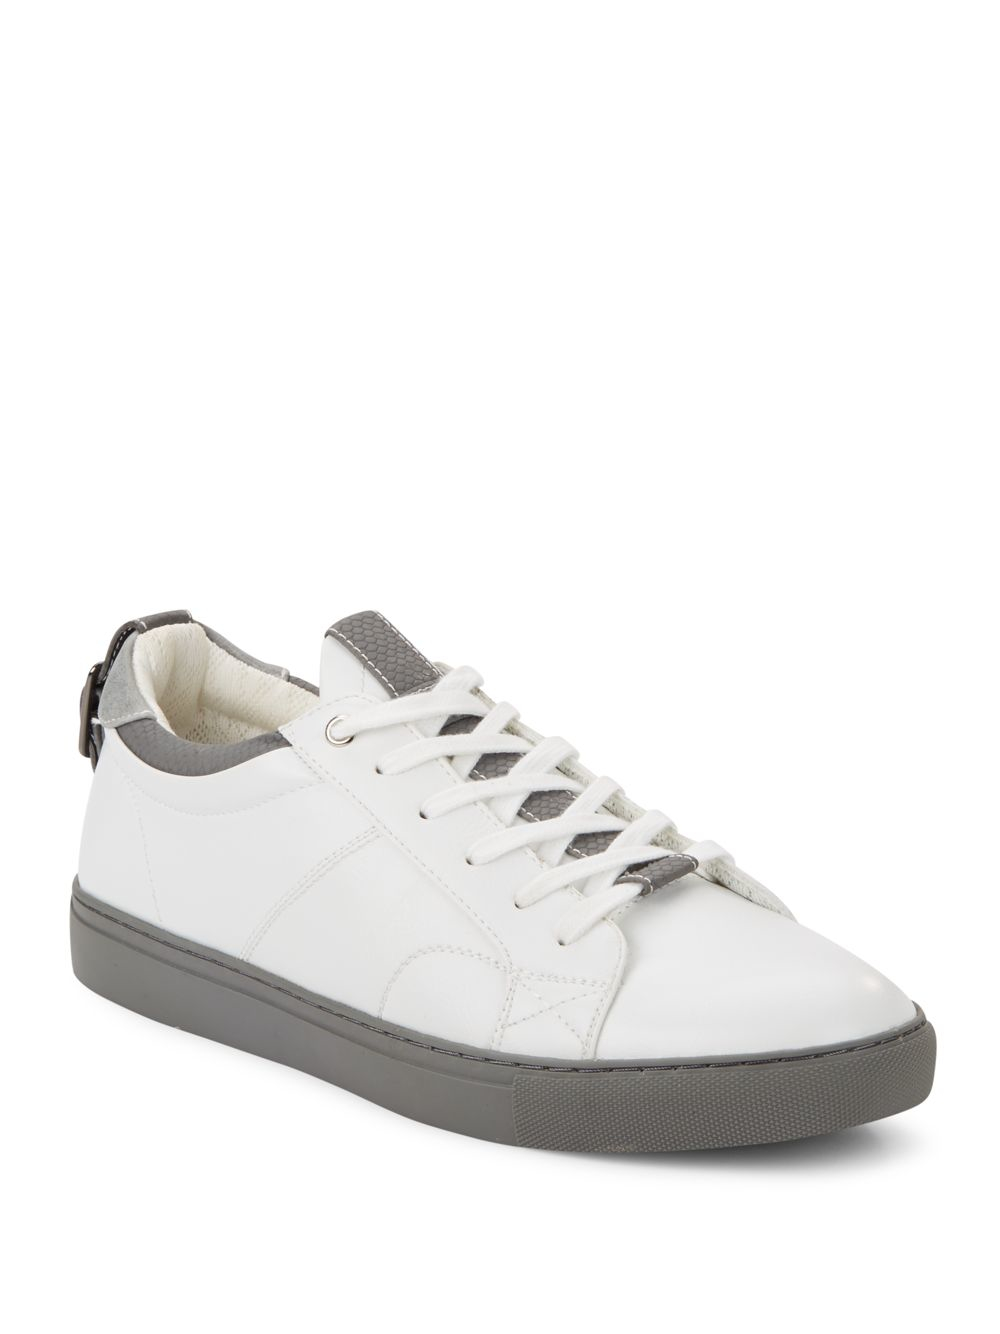 Steve madden Copter Sneakers in White for Men | Lyst